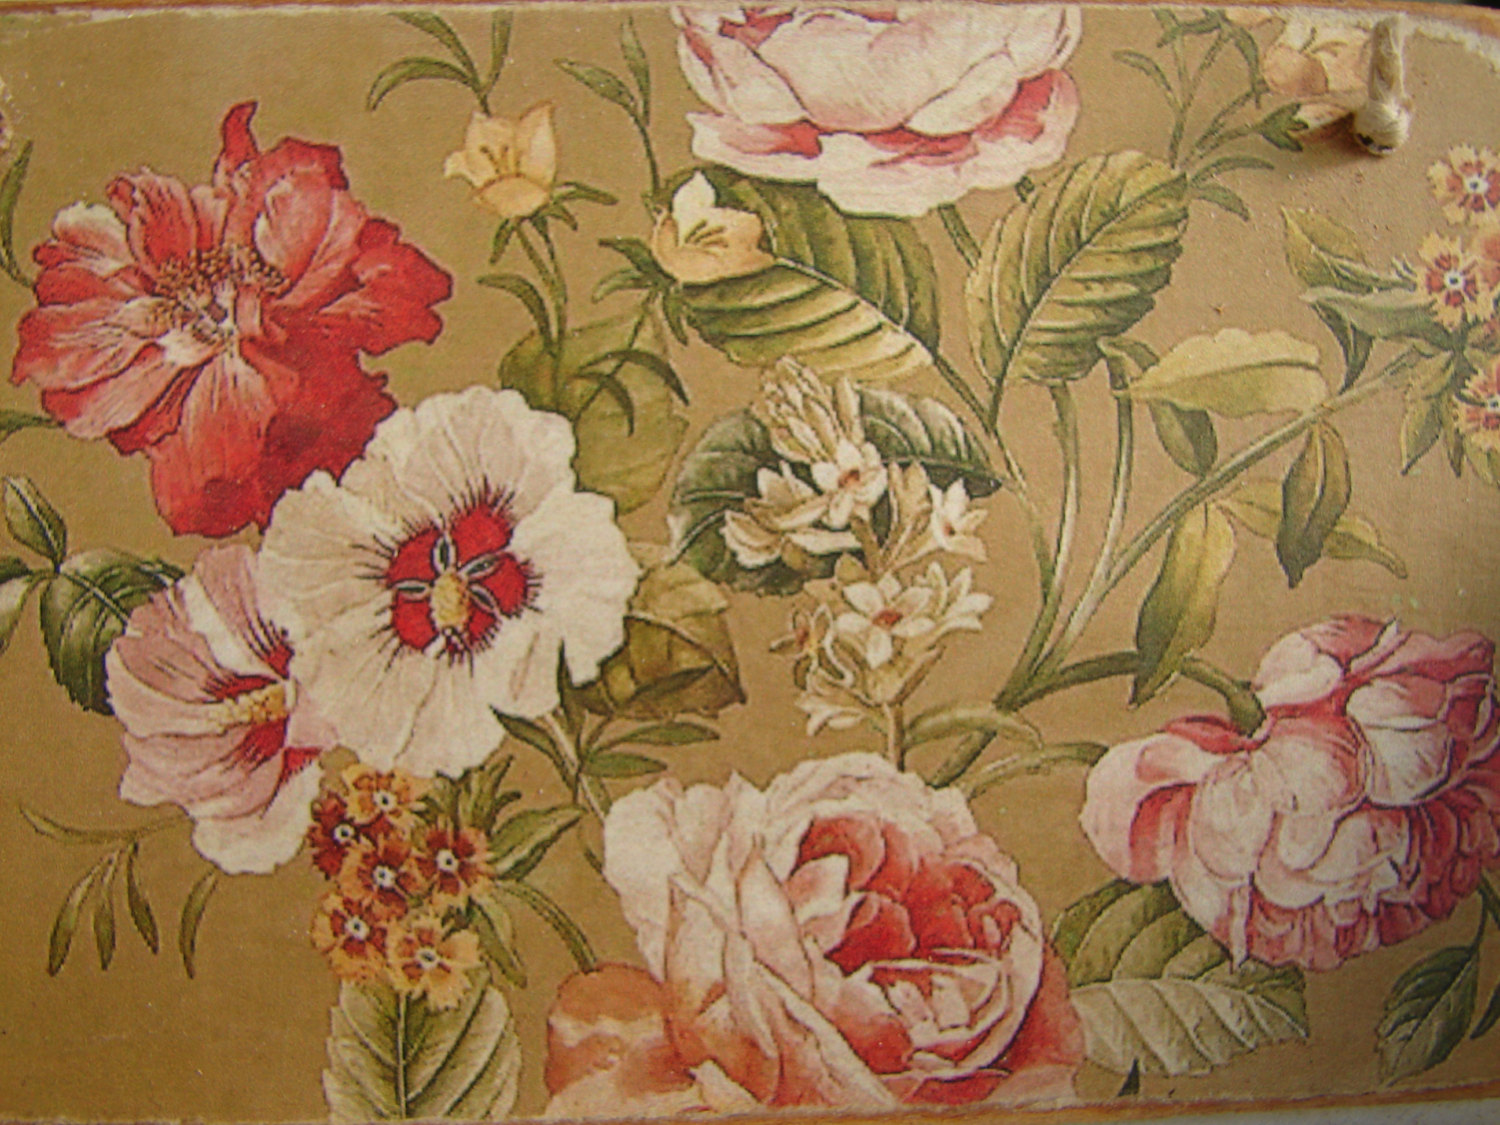 ビクトリア朝の花の壁紙,花,工場,庭のバラ,静物,繊維